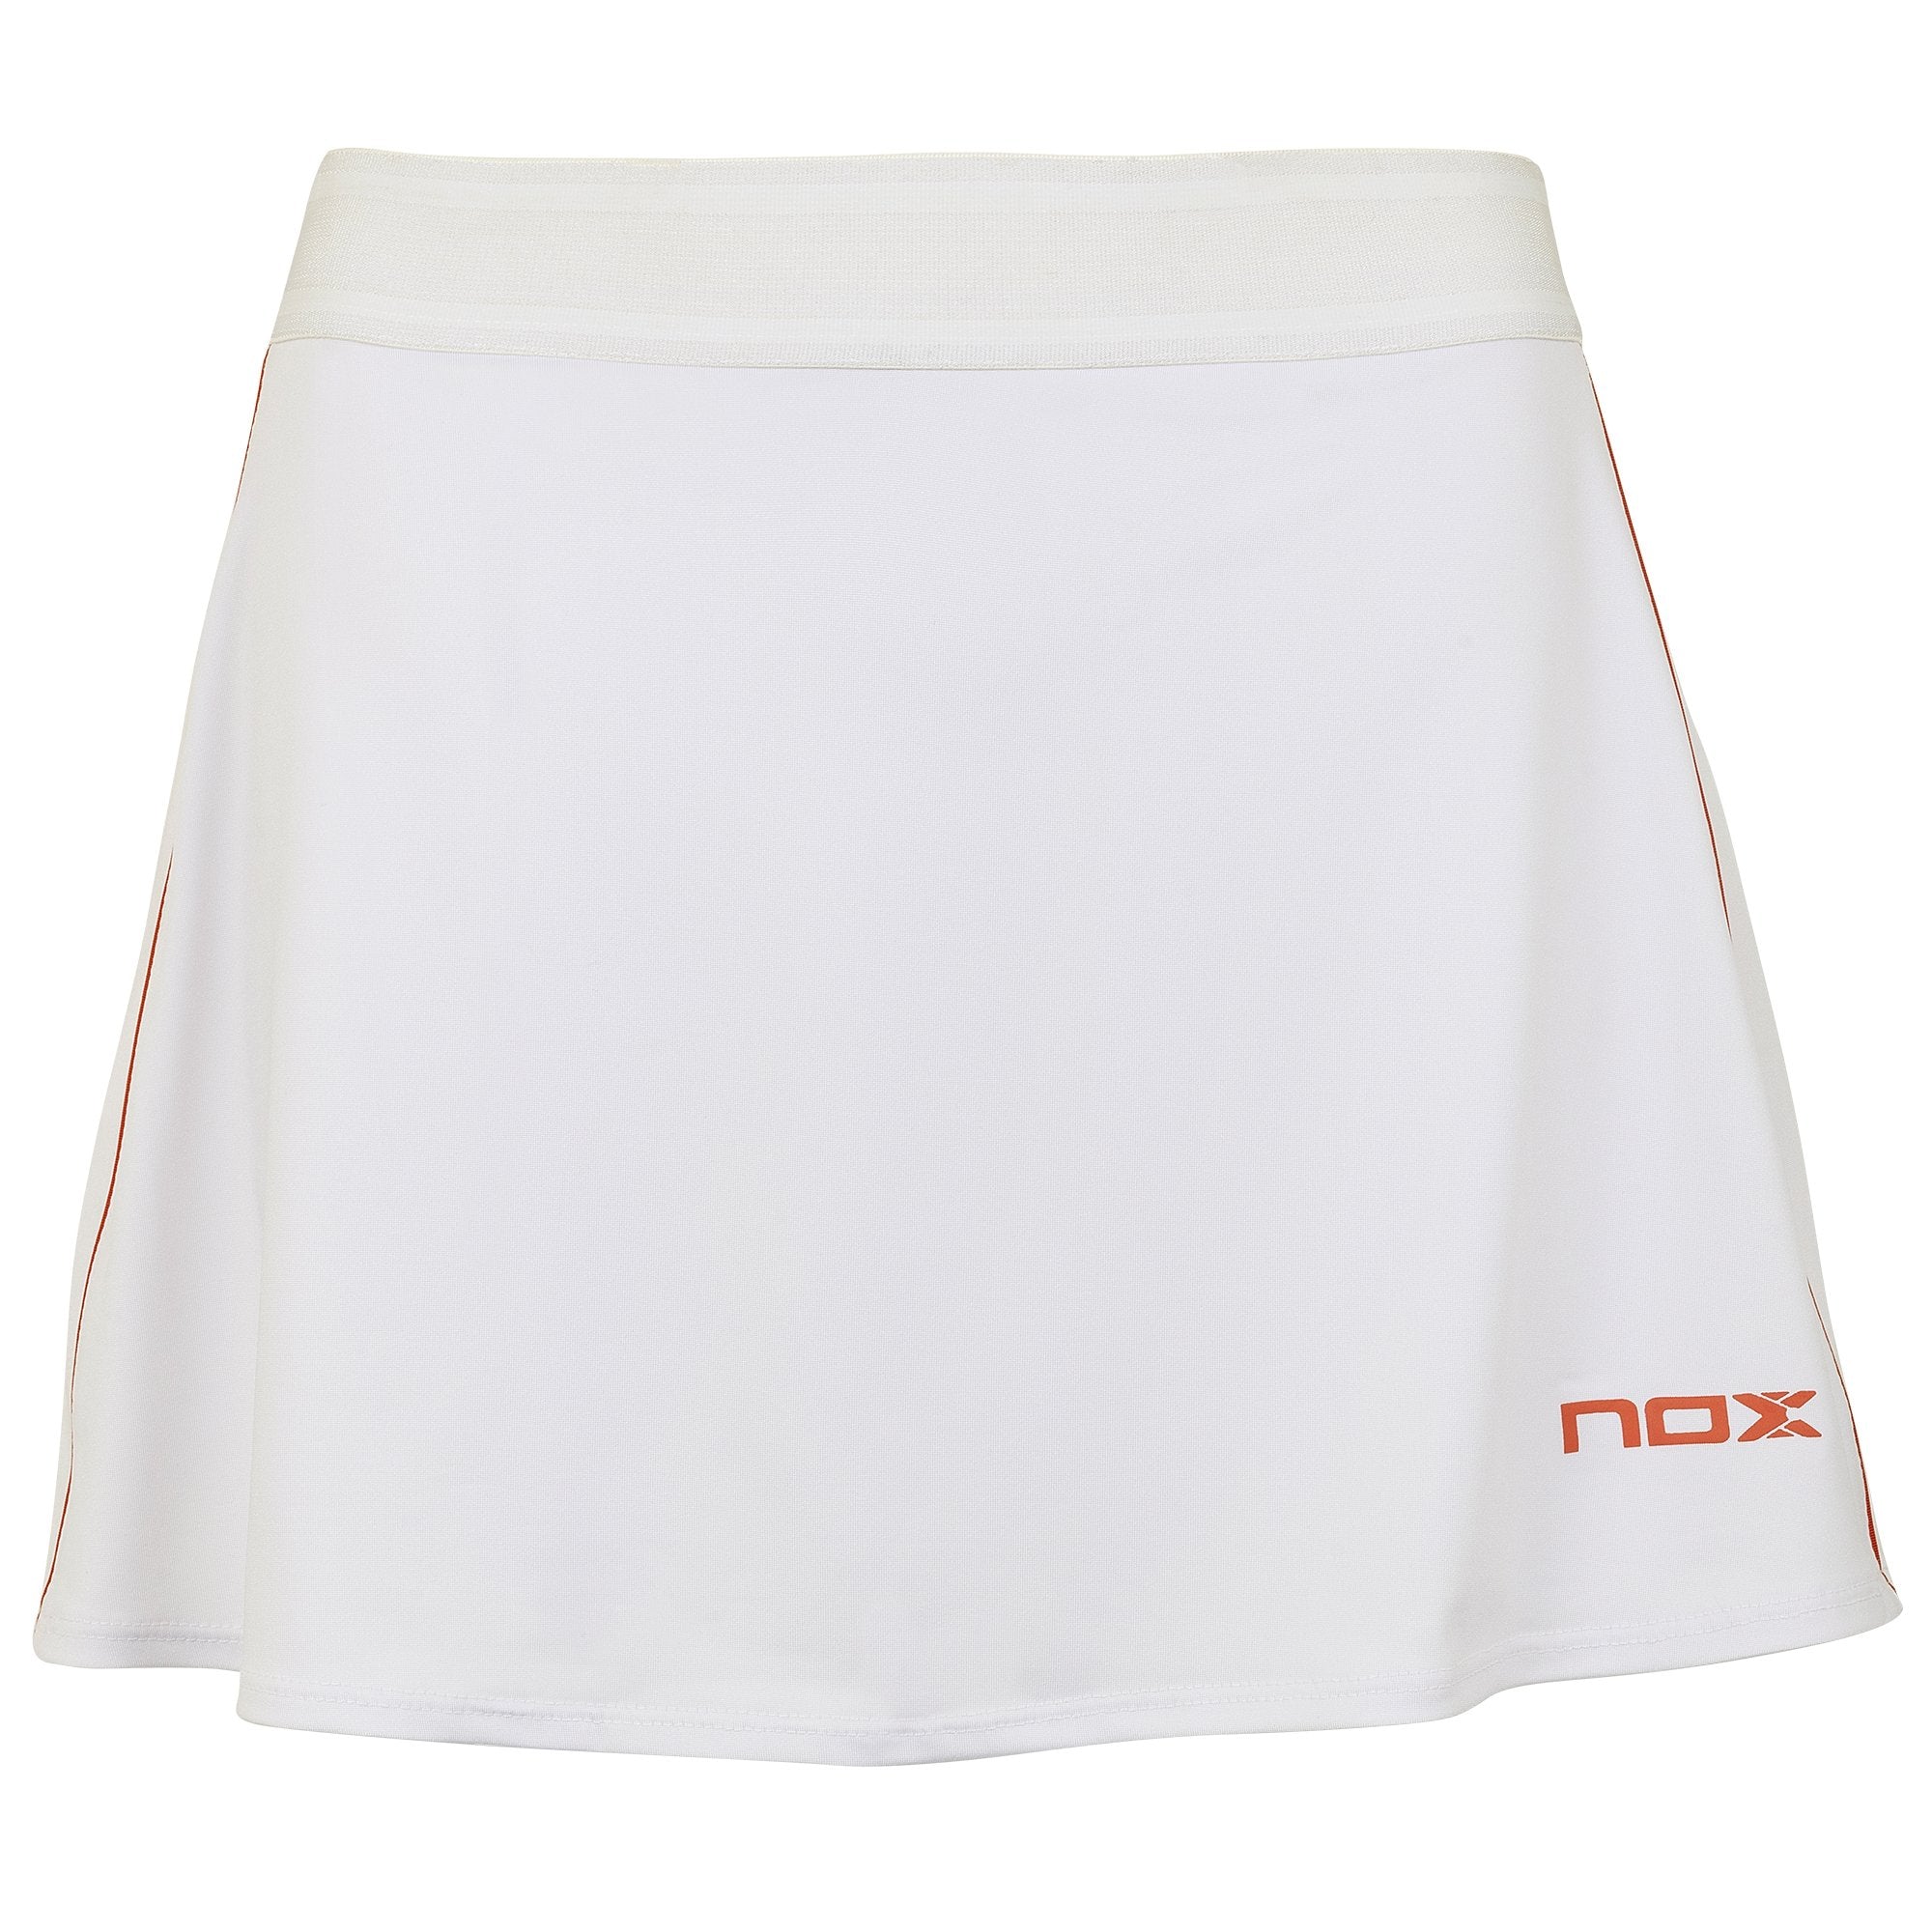 FALDA pádel TEAM Blanca logo rojo - NOX